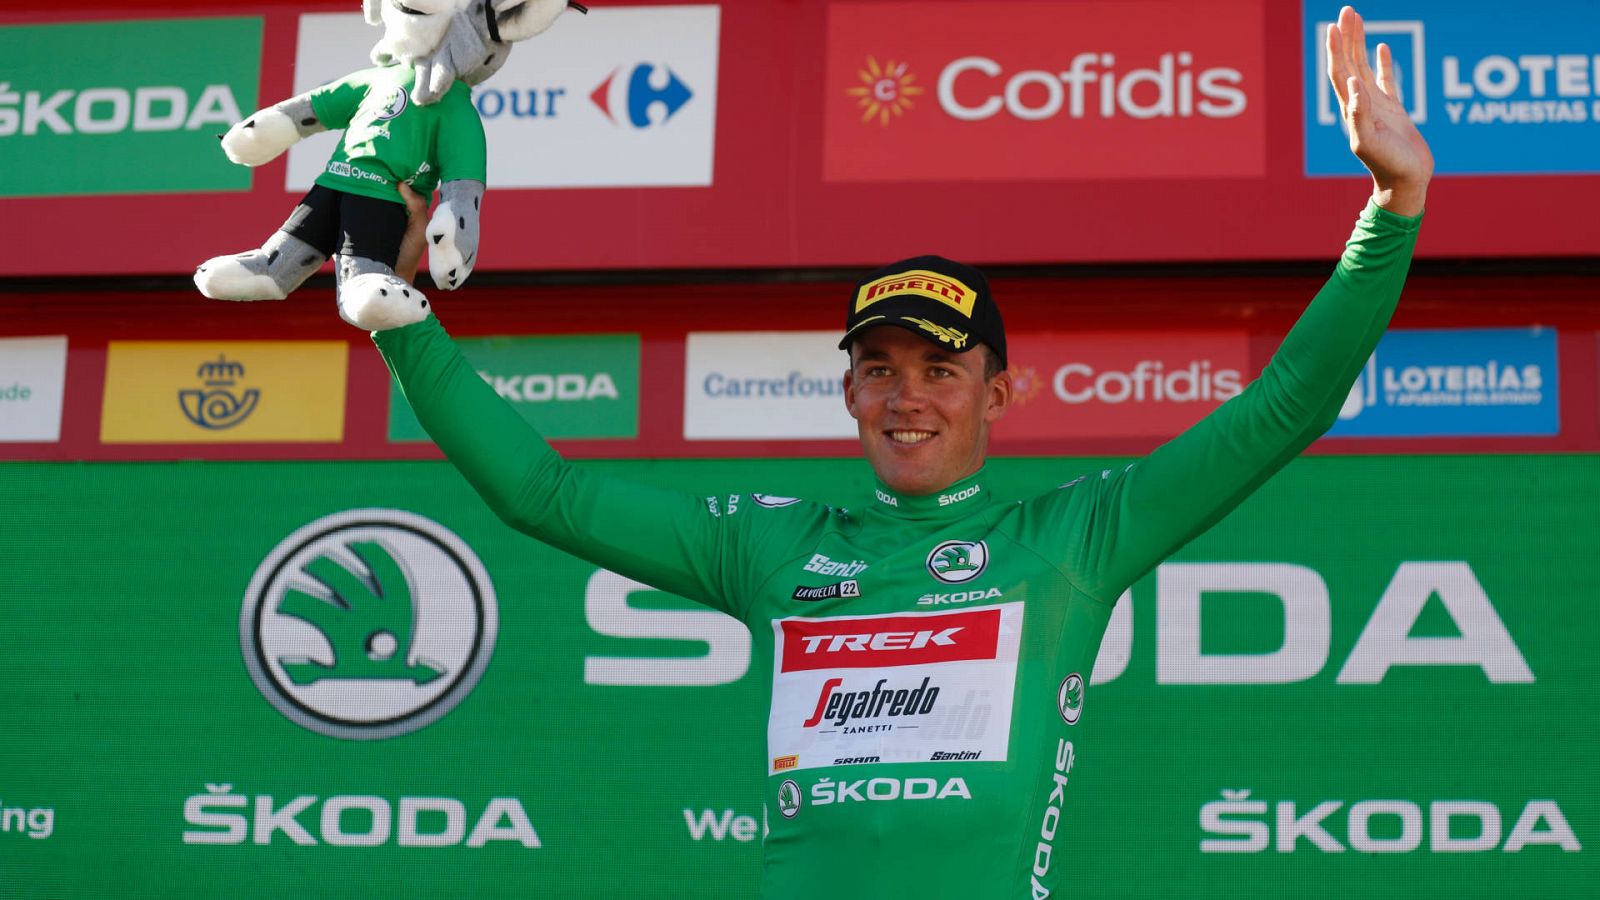 [Clasificación etapa 14 y general de la vuelta a ciclista a España 2022] Mads Pedersen, con el maillot verde